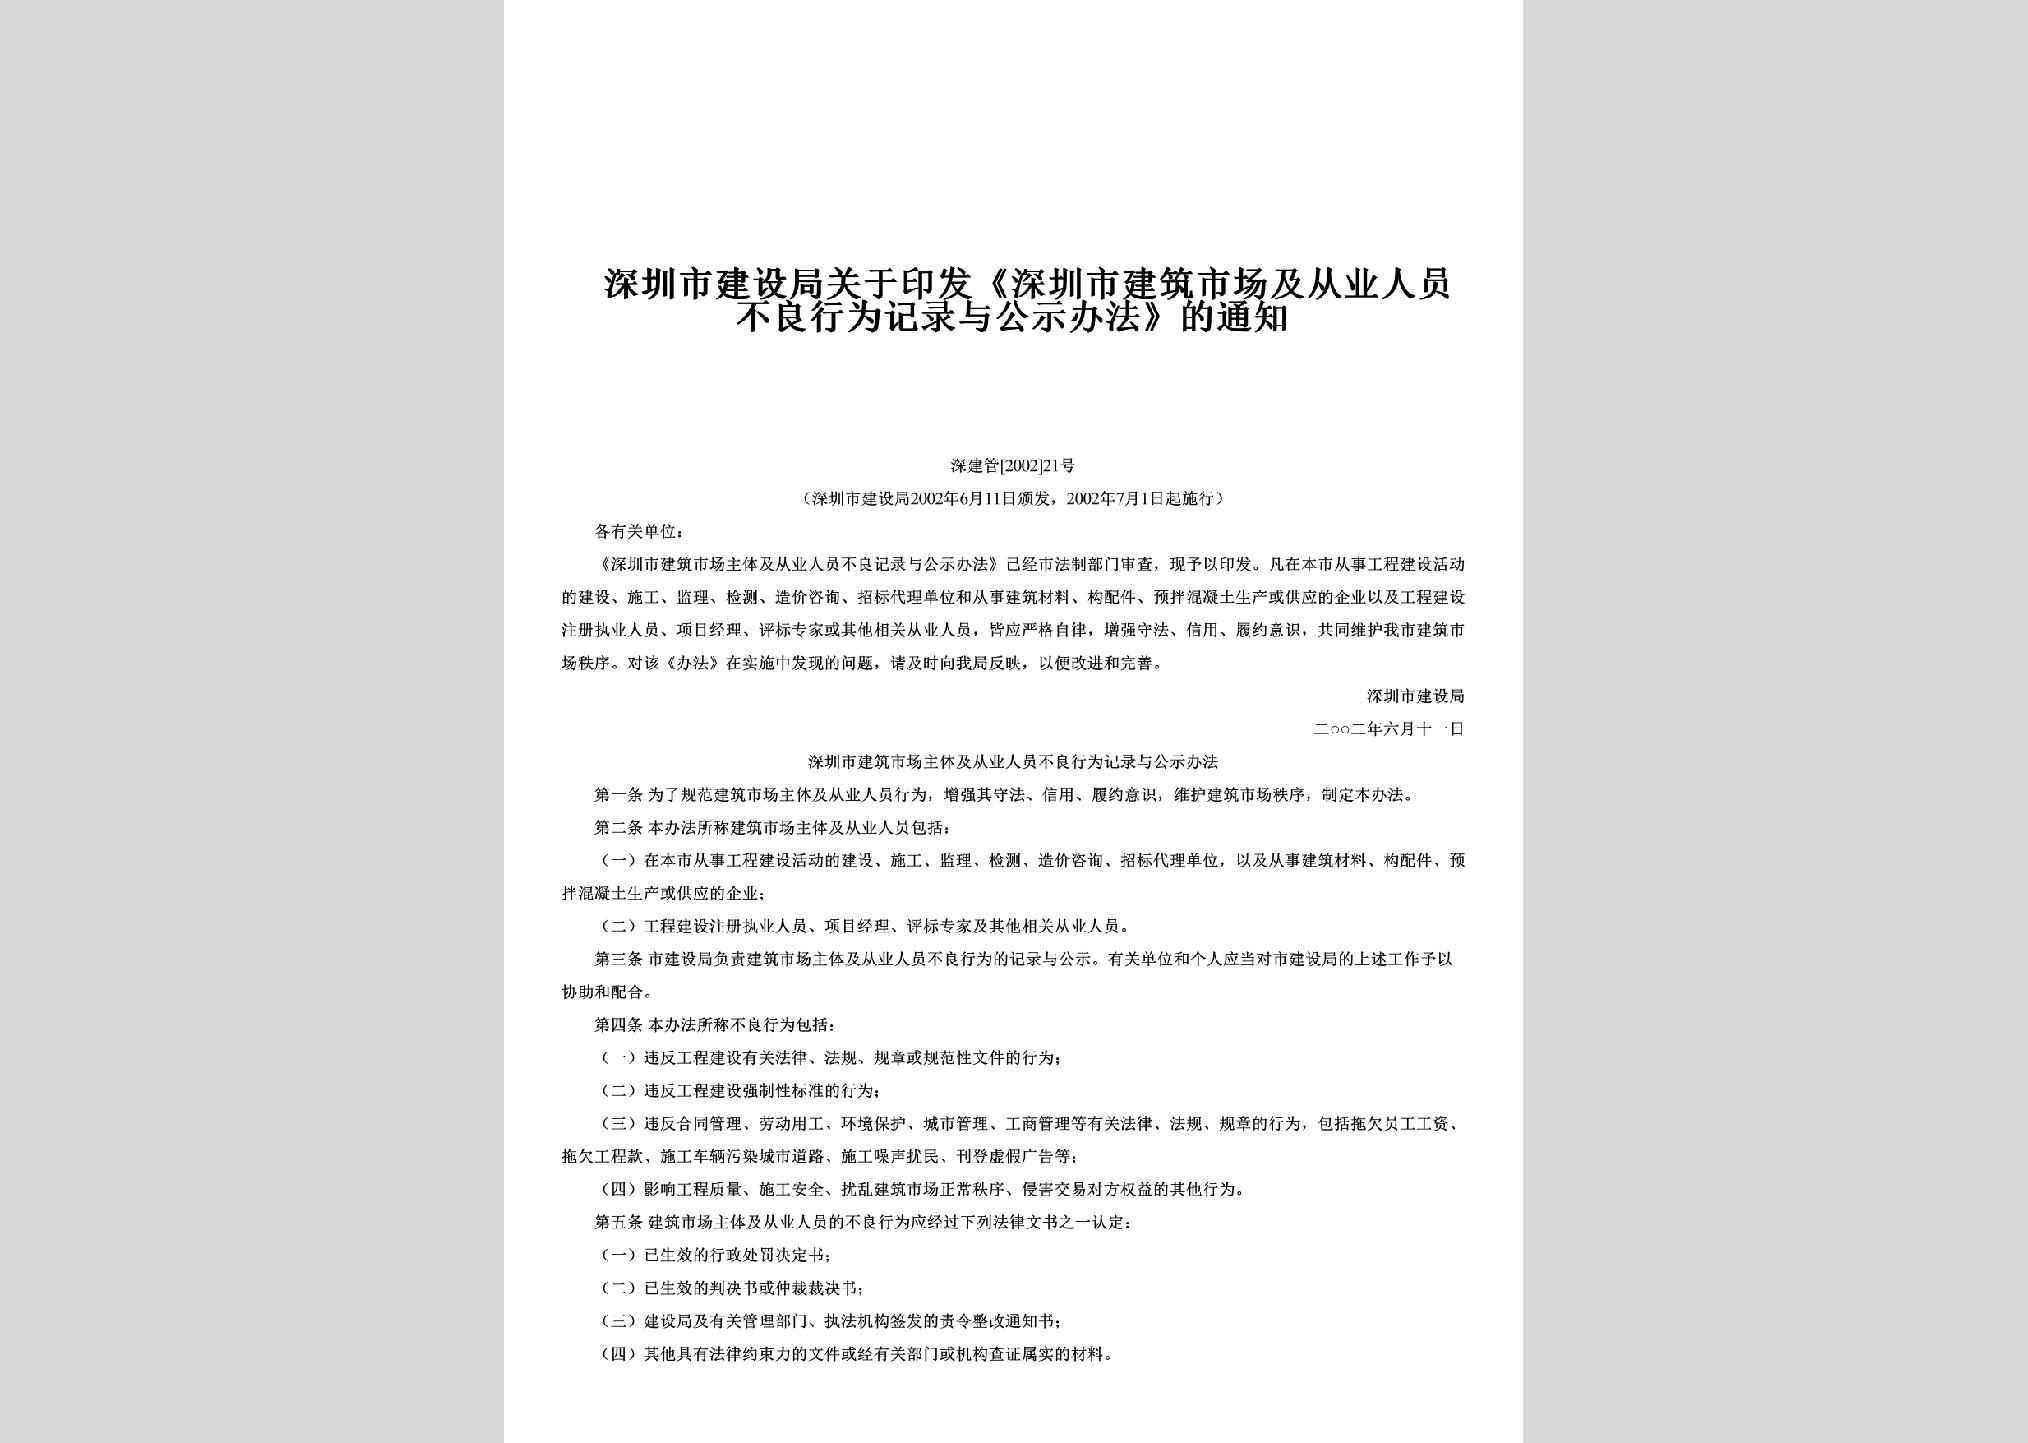 深建管[2002]21号：关于印发《深圳市建筑市场及从业人员不良行为记录与公示办法》的通知